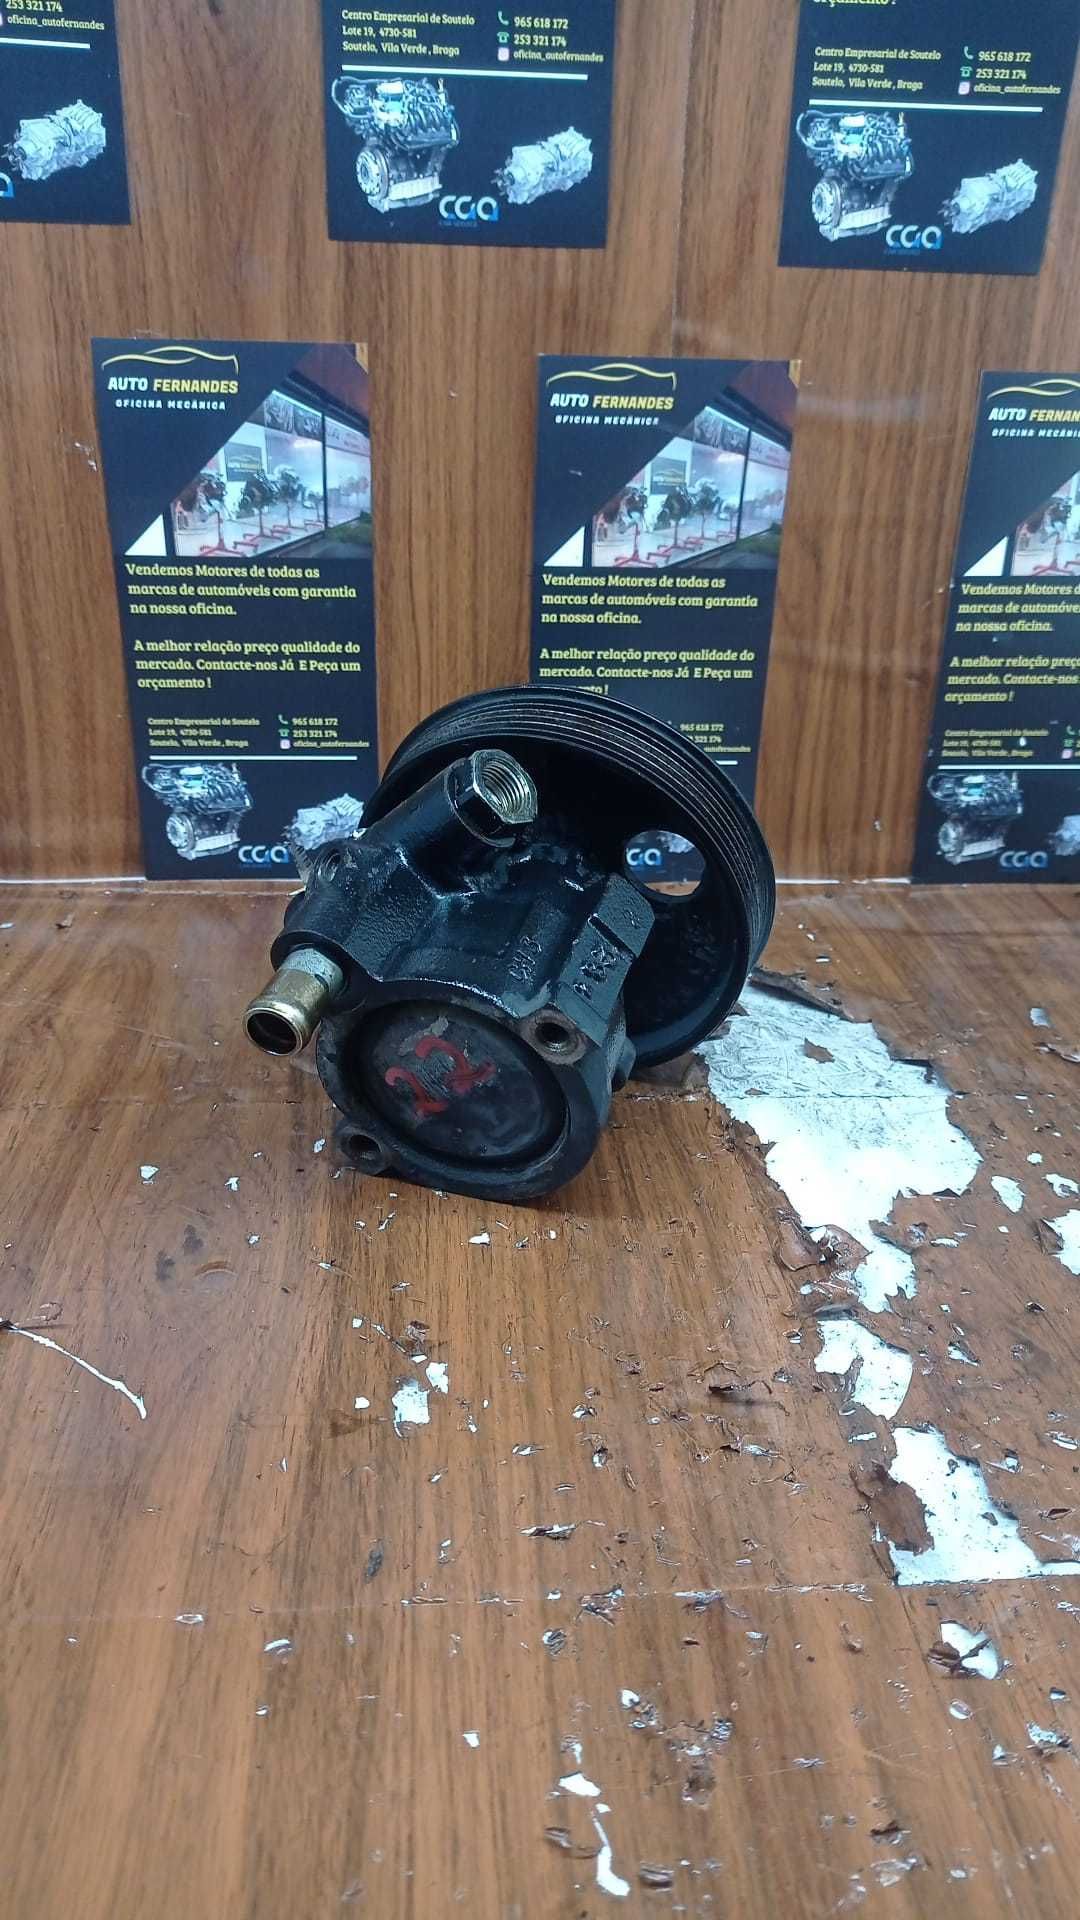 Bomba de Direção Renault

REF: 7 7 0 0 4 1 9 1 1 7